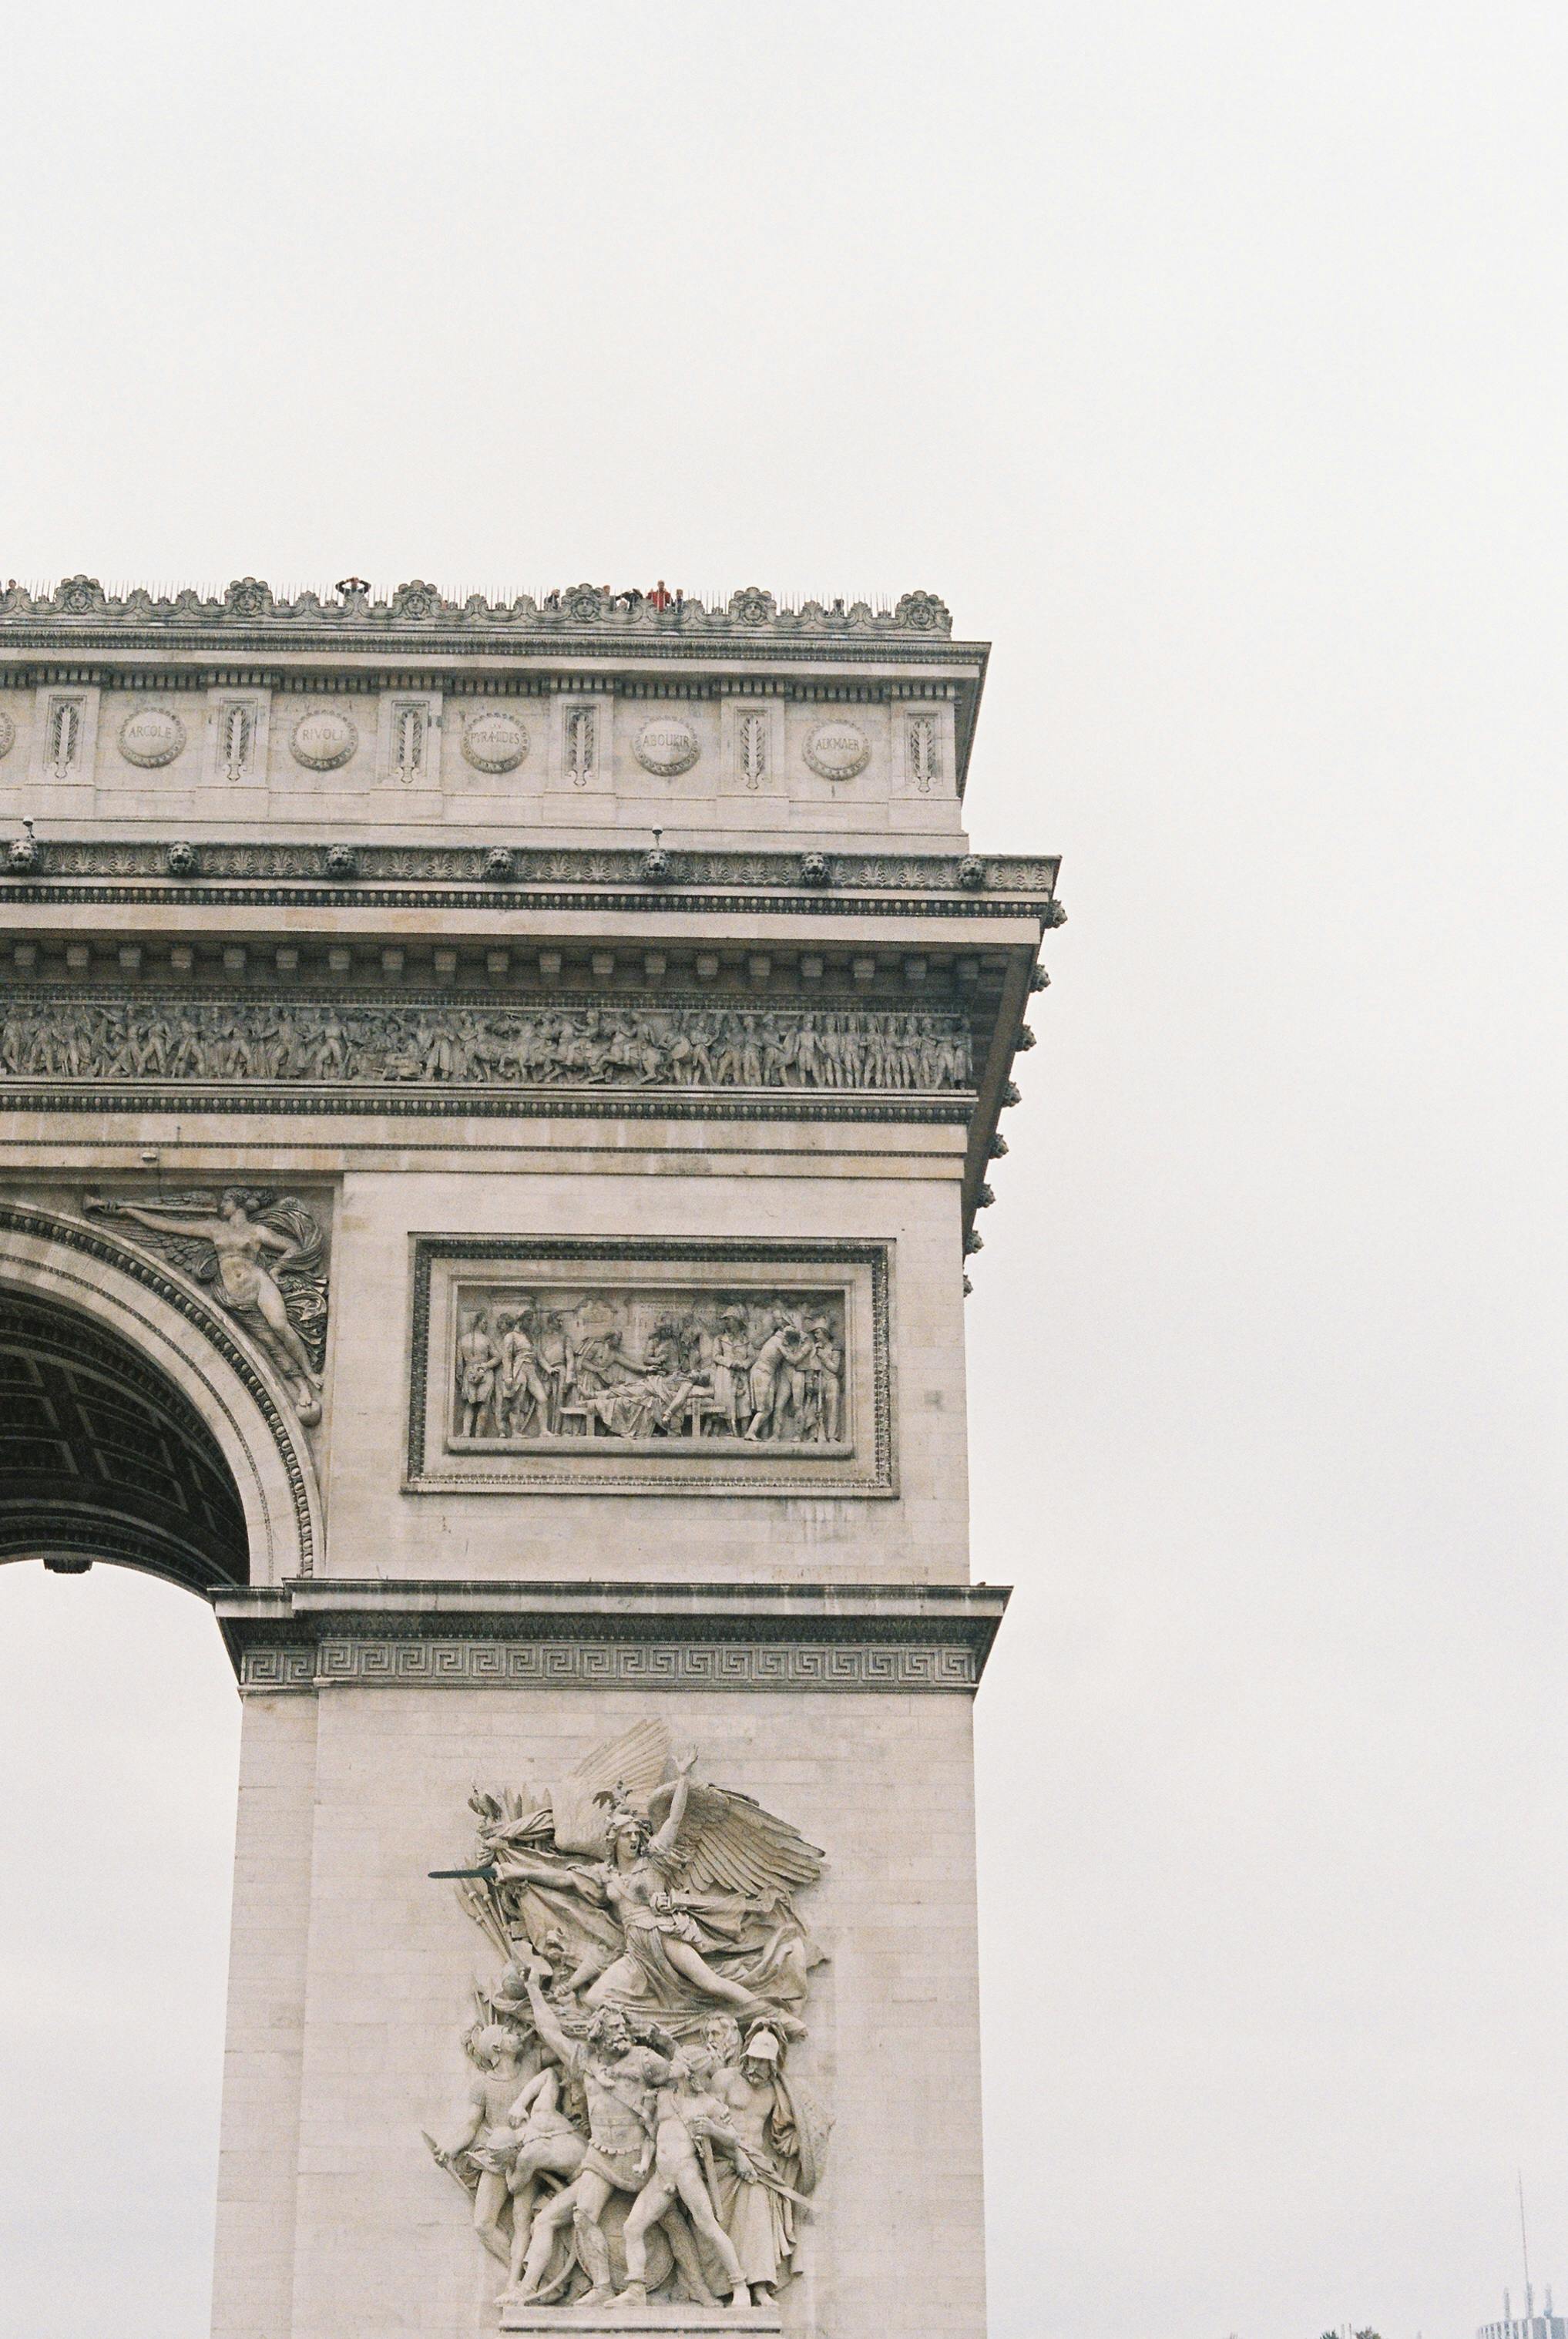 Arc De Triomphe Photos, Download The BEST Free Arc De Triomphe Stock Photos  & HD Images